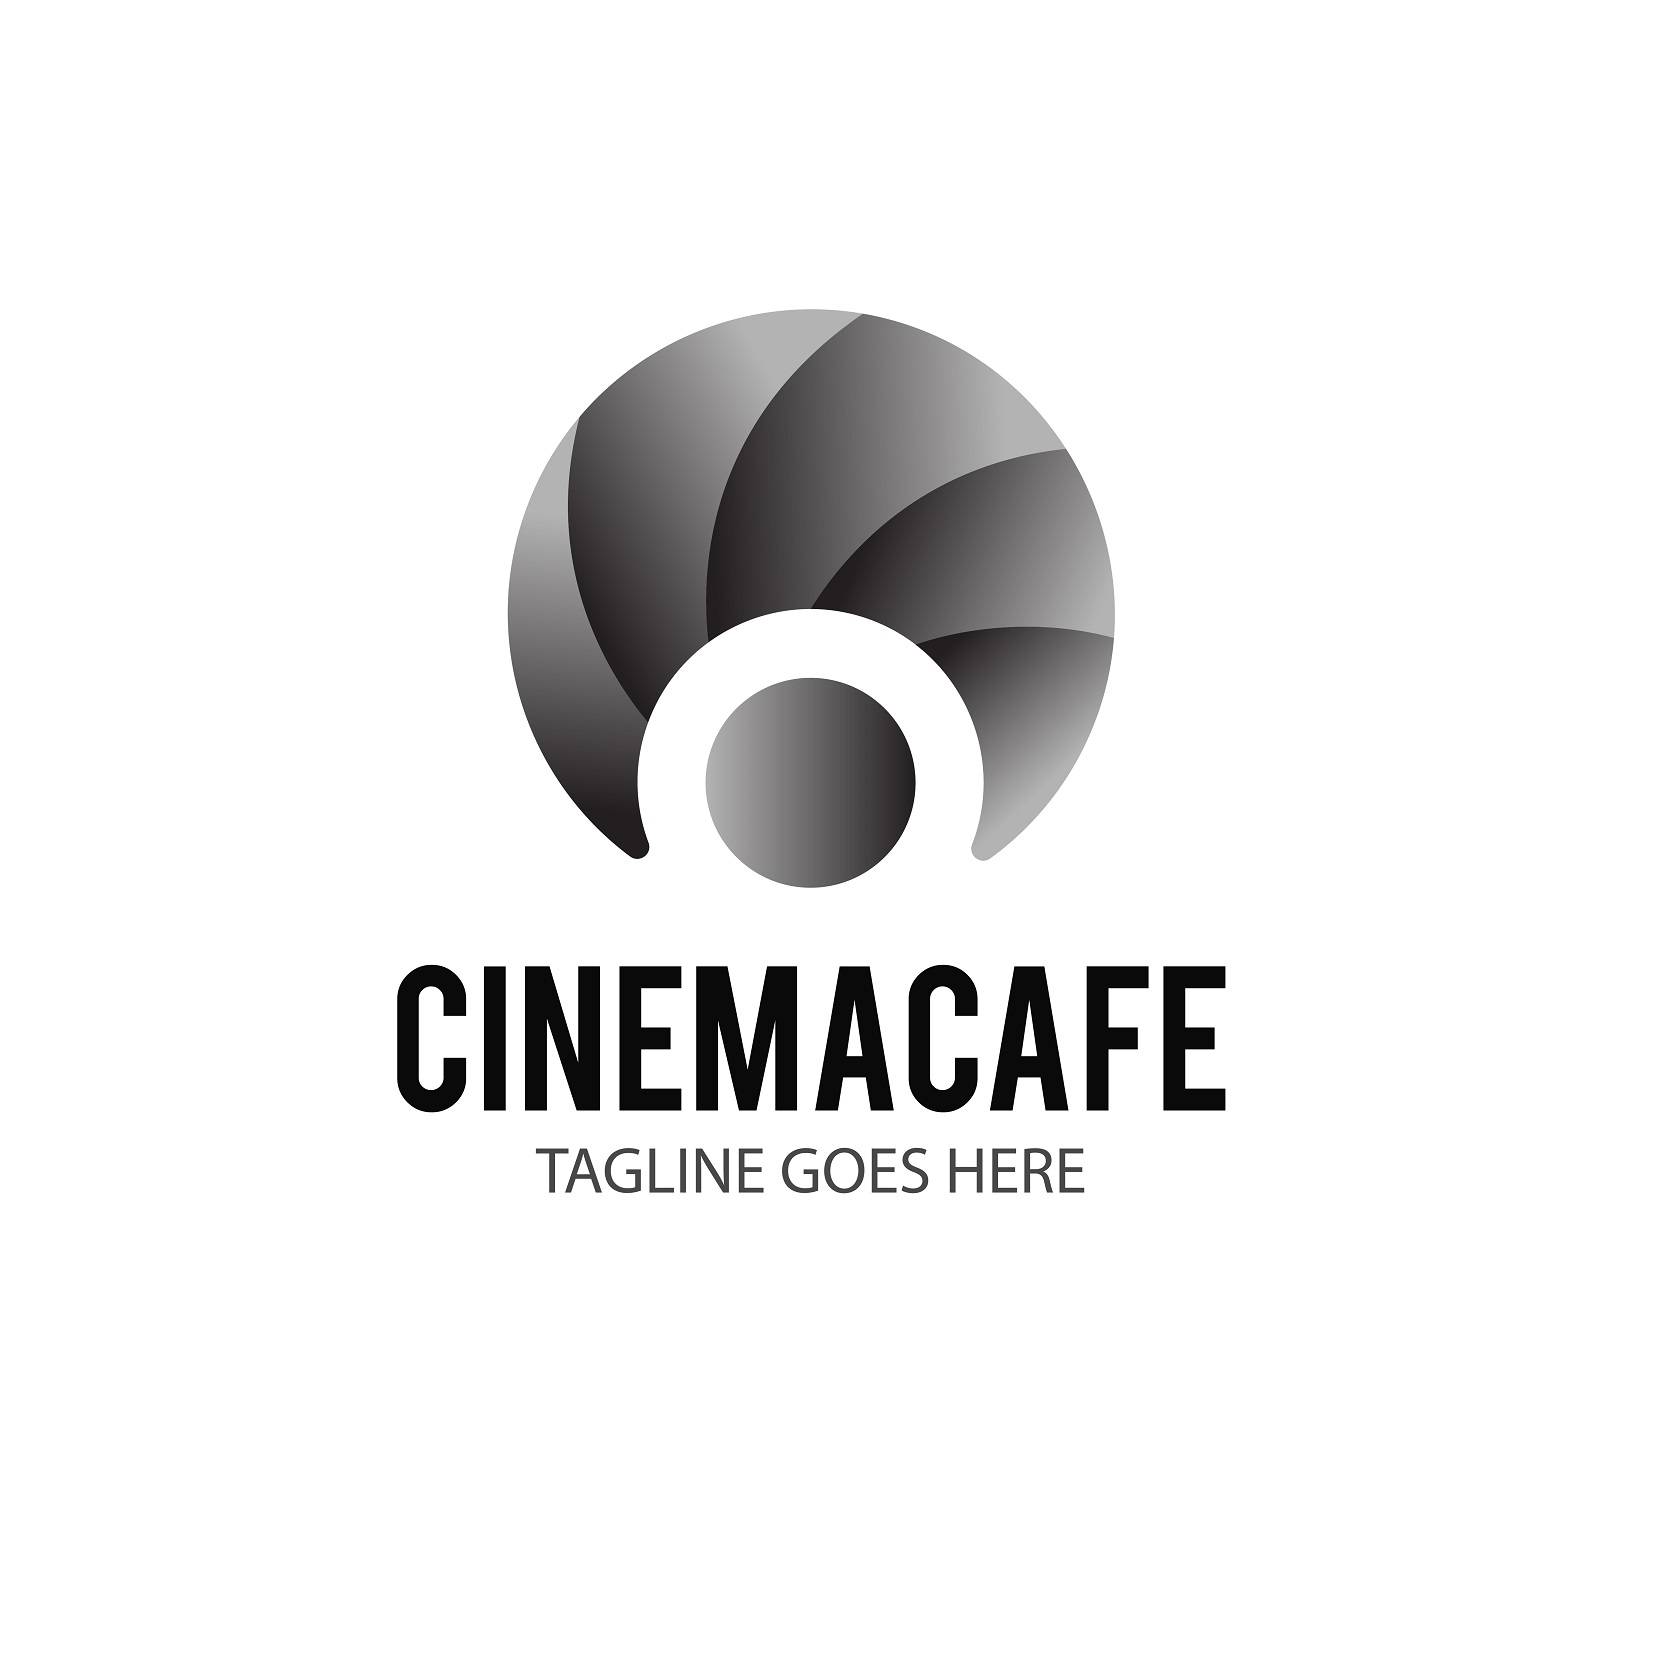 Cinema Cafe logo design with camera lens